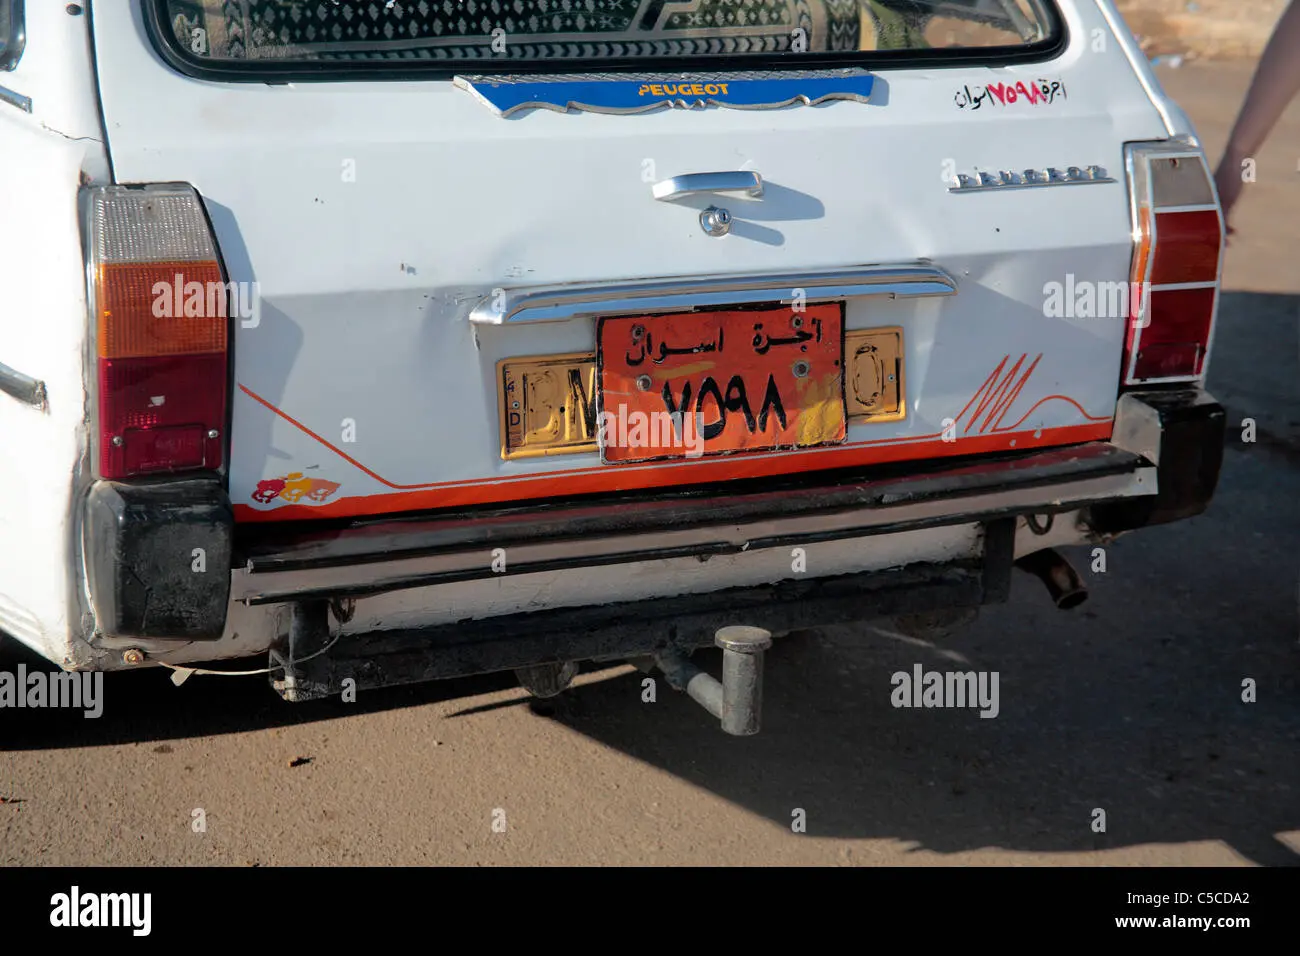 taxi aswan - Qué hacer en Aswan por libre